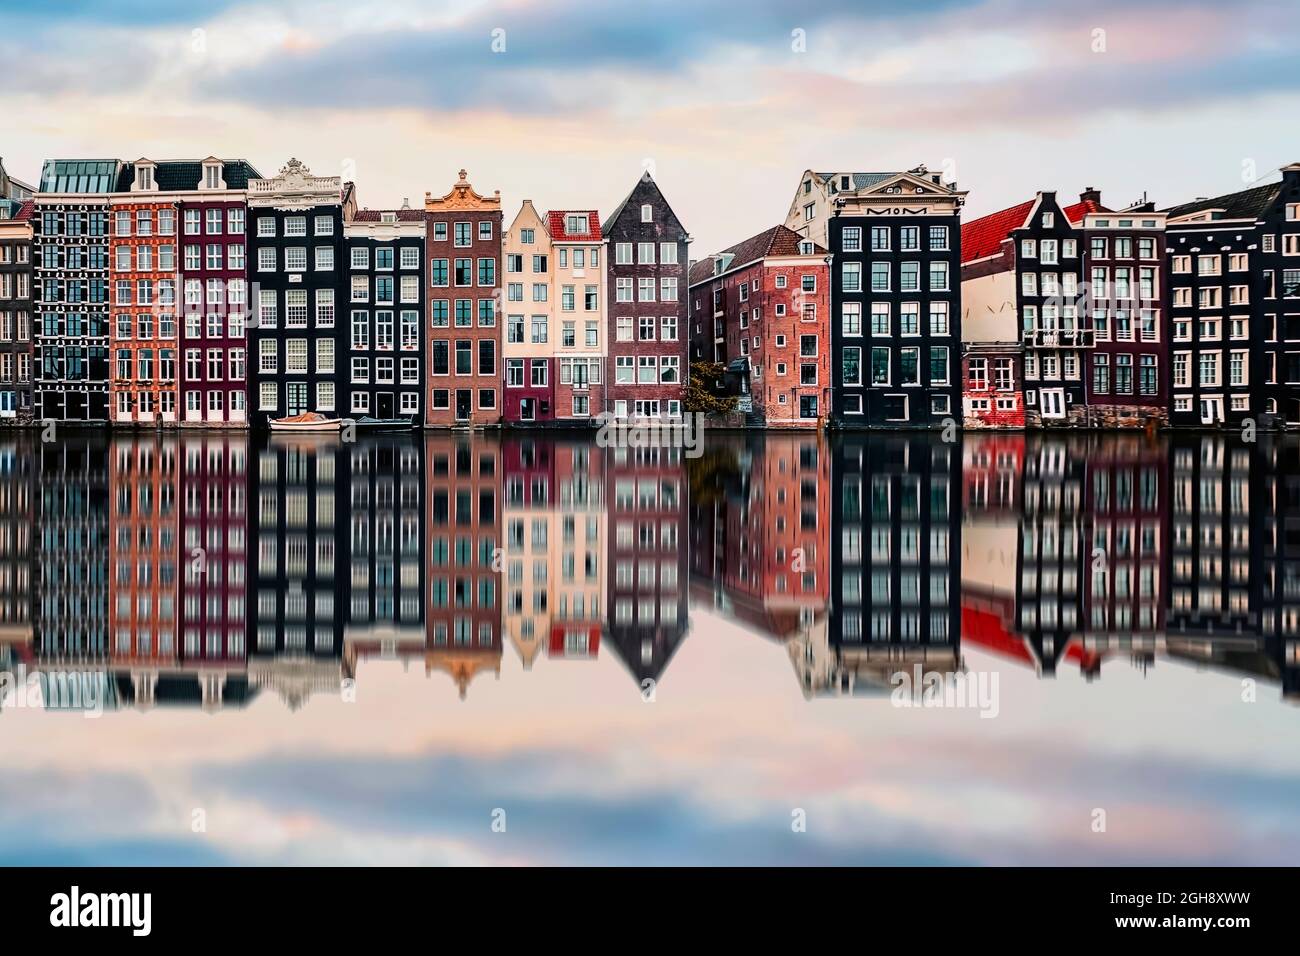 Edificios en la avenida Damrak, ciudad de Amsterdam, Países Bajos Foto de stock